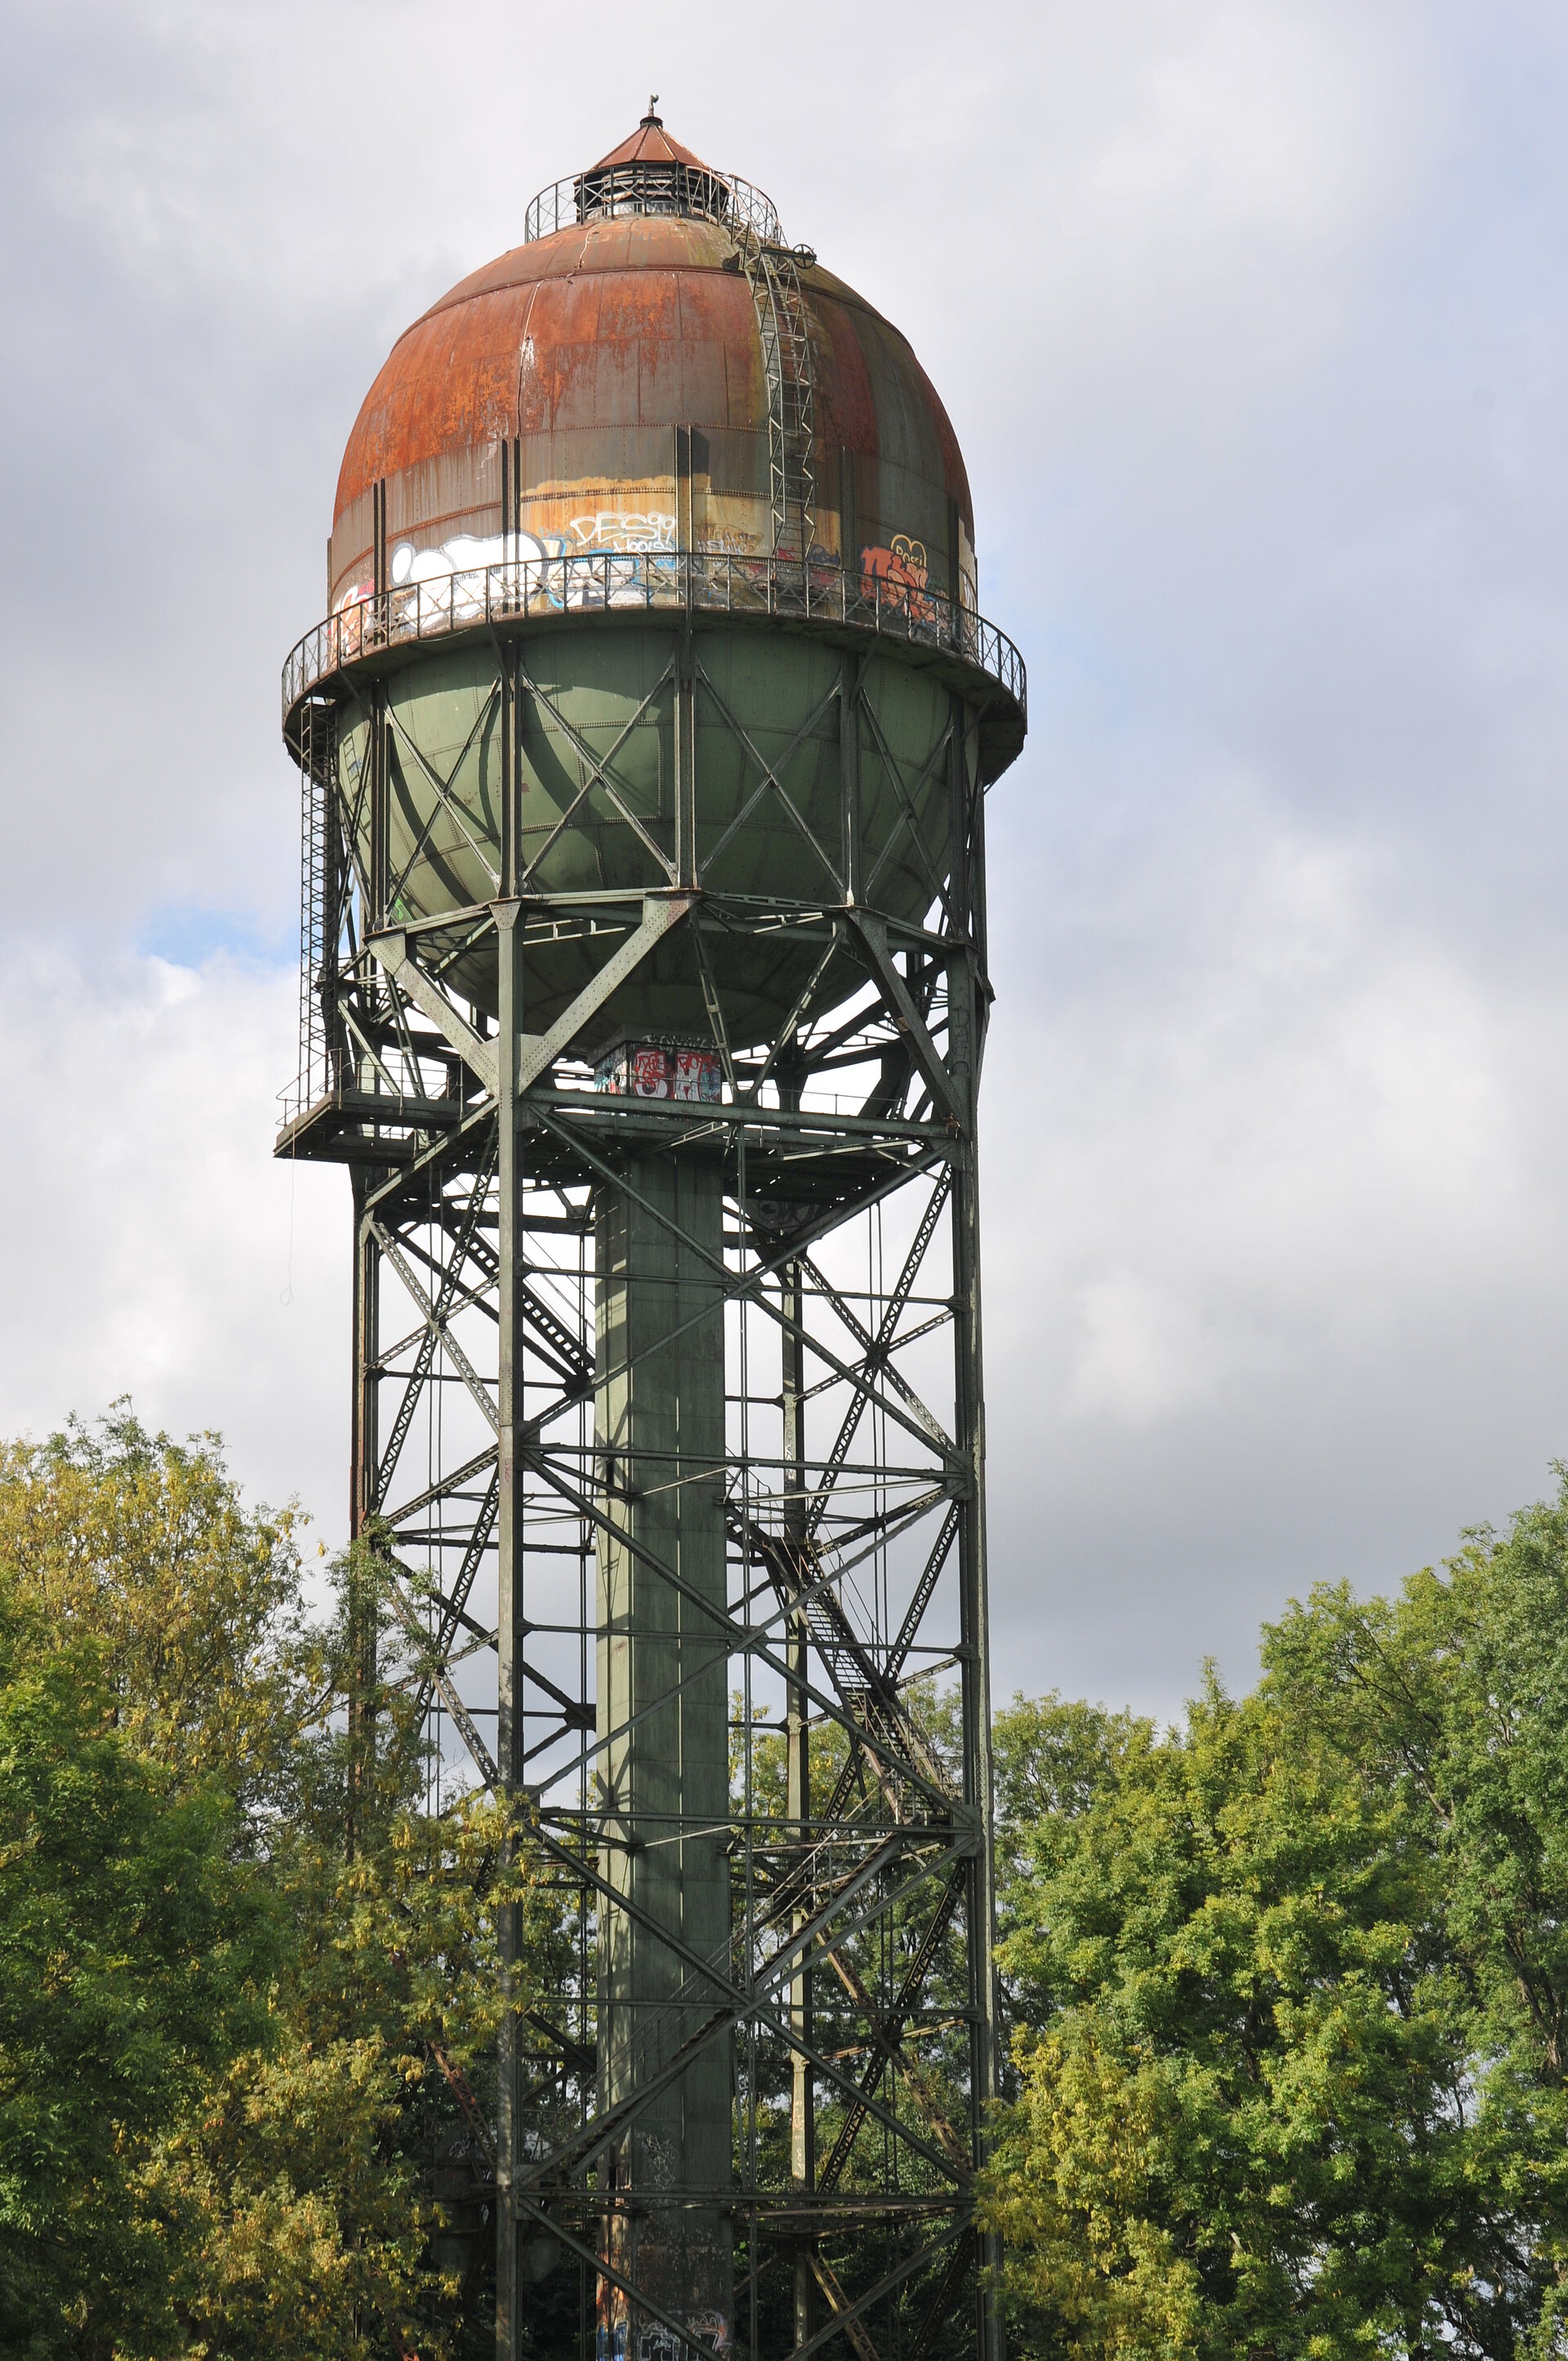 Wasserturm "Lanstroper Ei" in Dortmund.